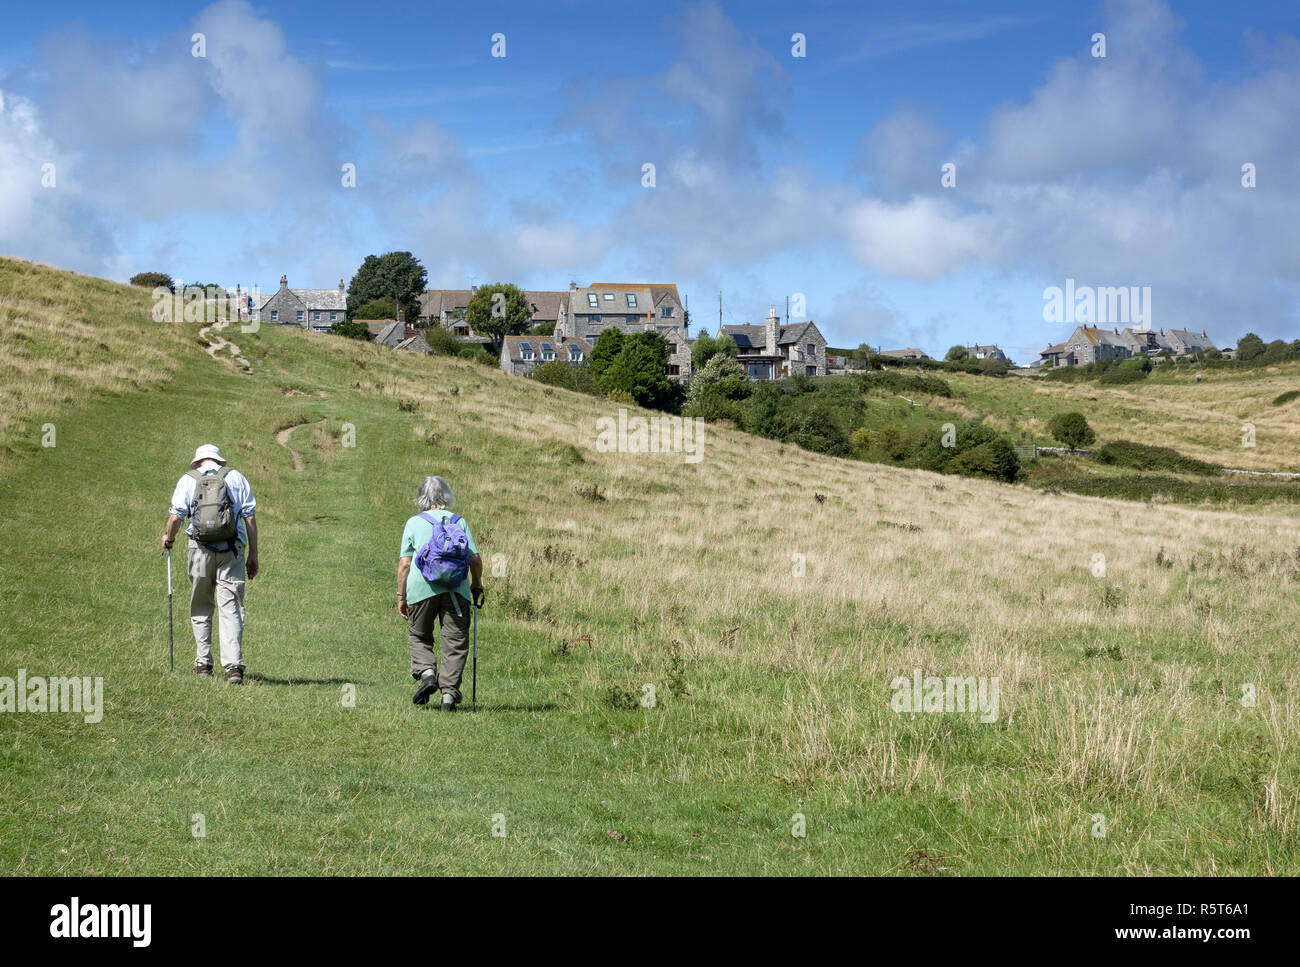 Couple de personnes âgées avec sacs à dos en direction du village pittoresque de Worth Matravers sur l'île de Purbeck, Dorset, Angleterre, Royaume-Uni Banque D'Images